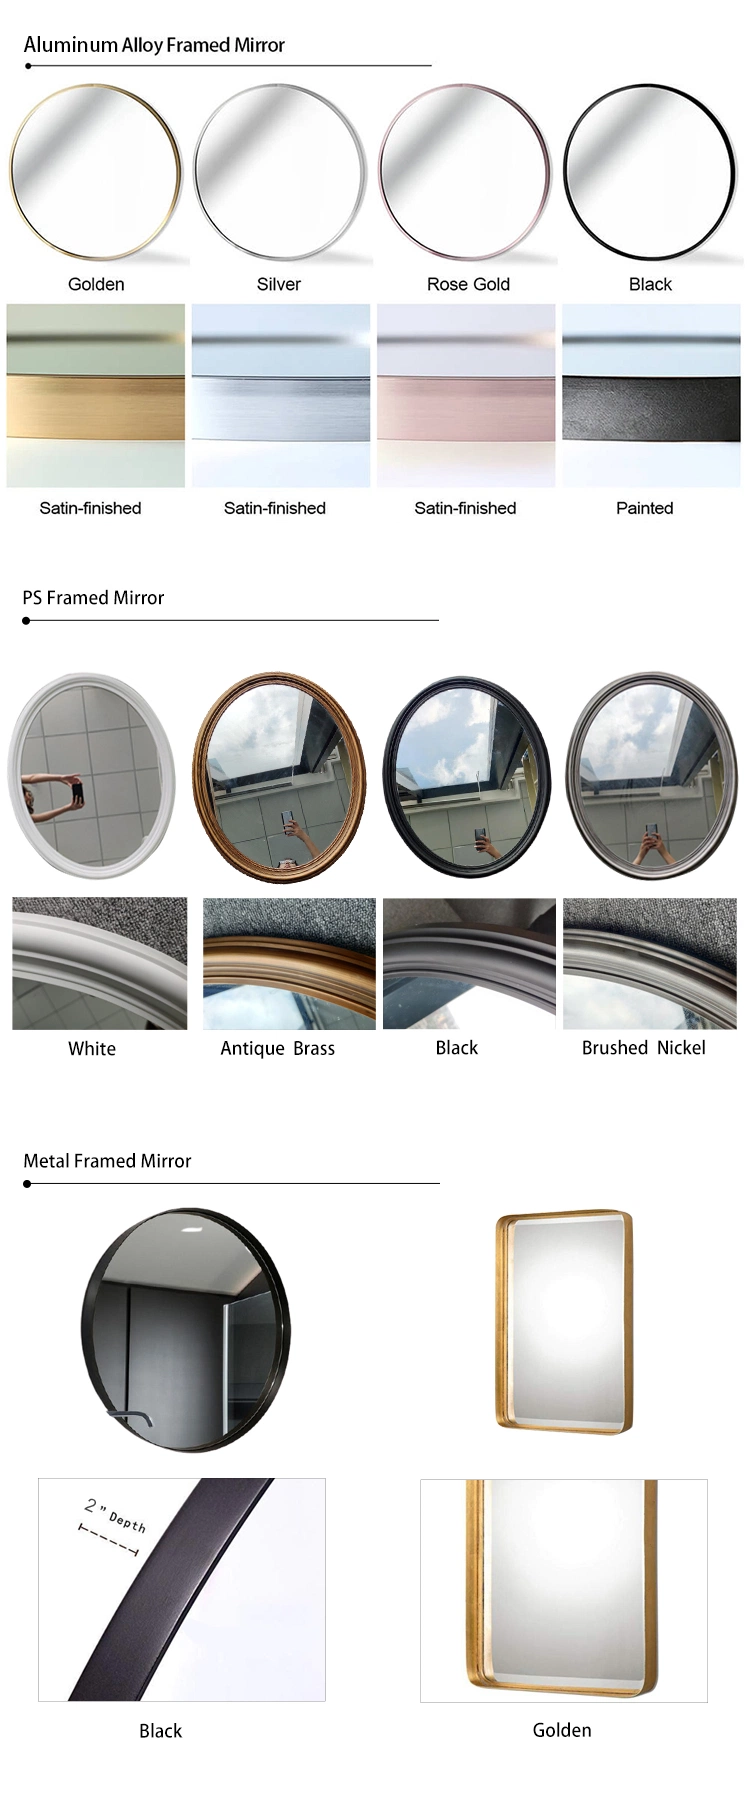 Round Aluminum Iron Satinless Steel Frame Frameless Full Length Wall Mounted Lighted Vanity Bathroom Home Decor Make up Framed Mirror